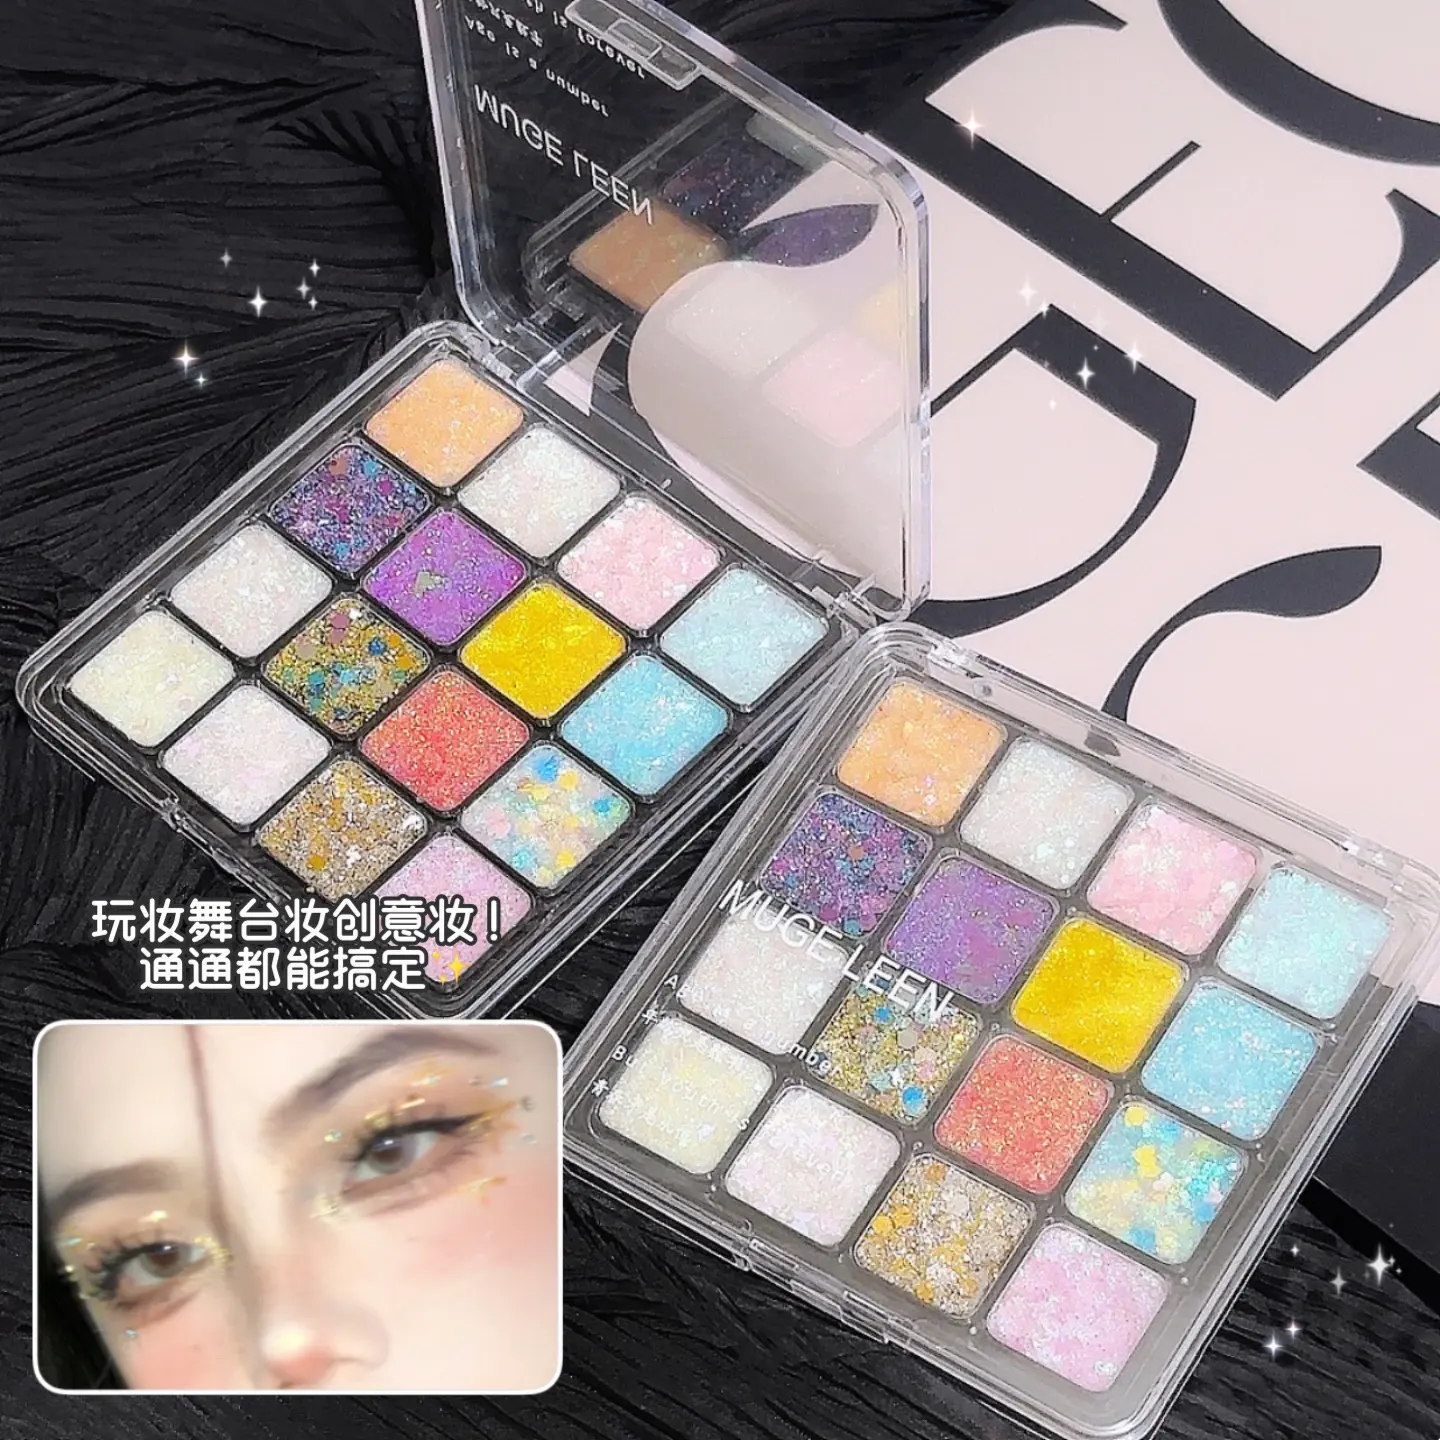 Payet warna-warni eye shadow piring pearlescent matte makeup gratis putri duyung makeup flash berlian kecil eye shadow